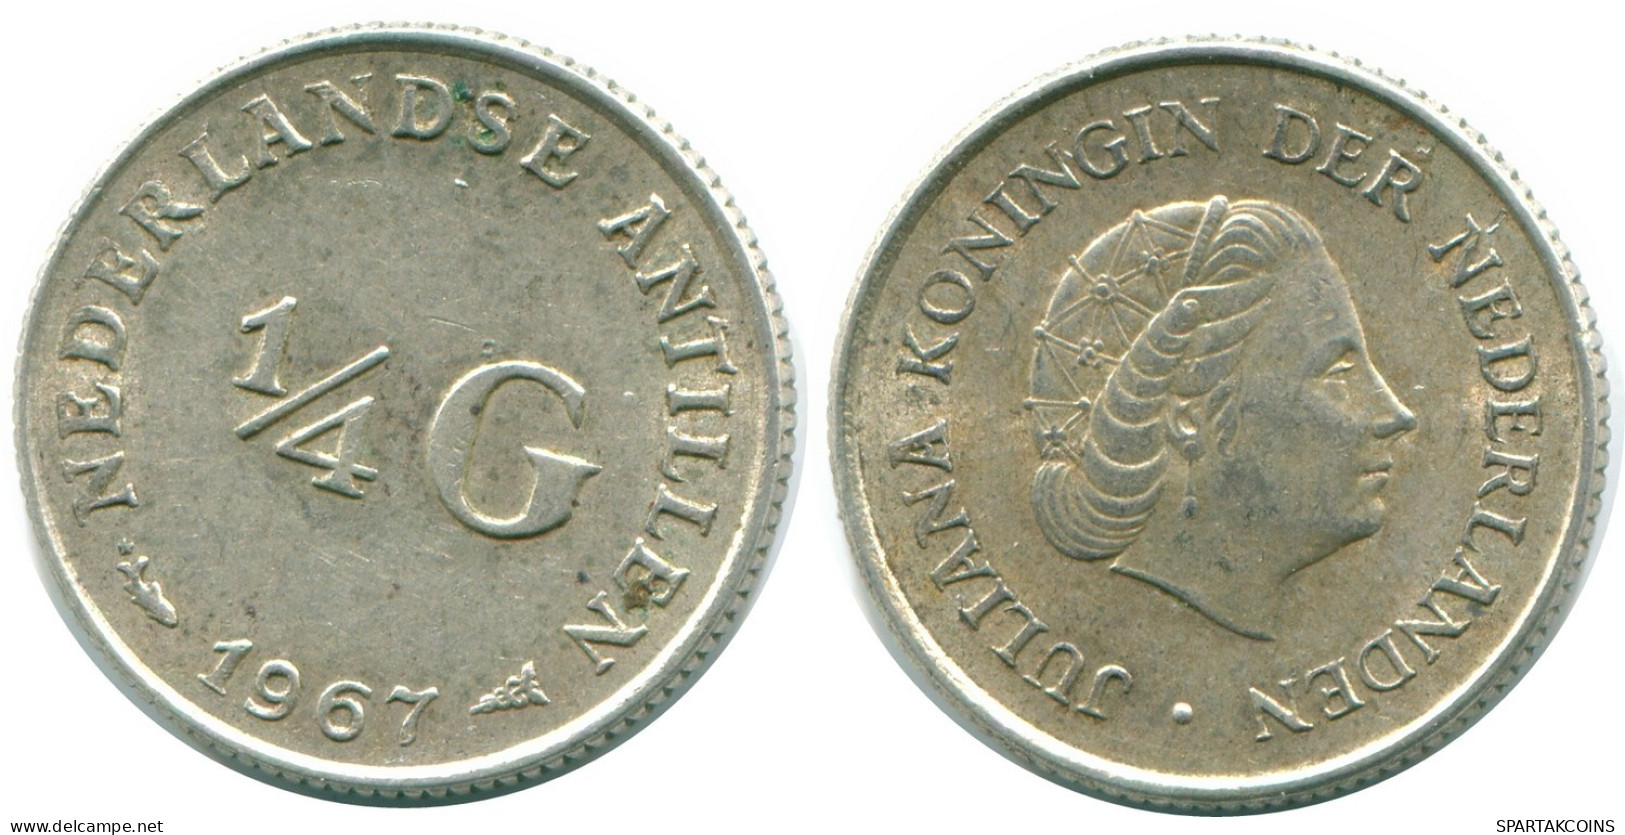 1/4 GULDEN 1967 NIEDERLÄNDISCHE ANTILLEN SILBER Koloniale Münze #NL11541.4.D.A - Antilles Néerlandaises